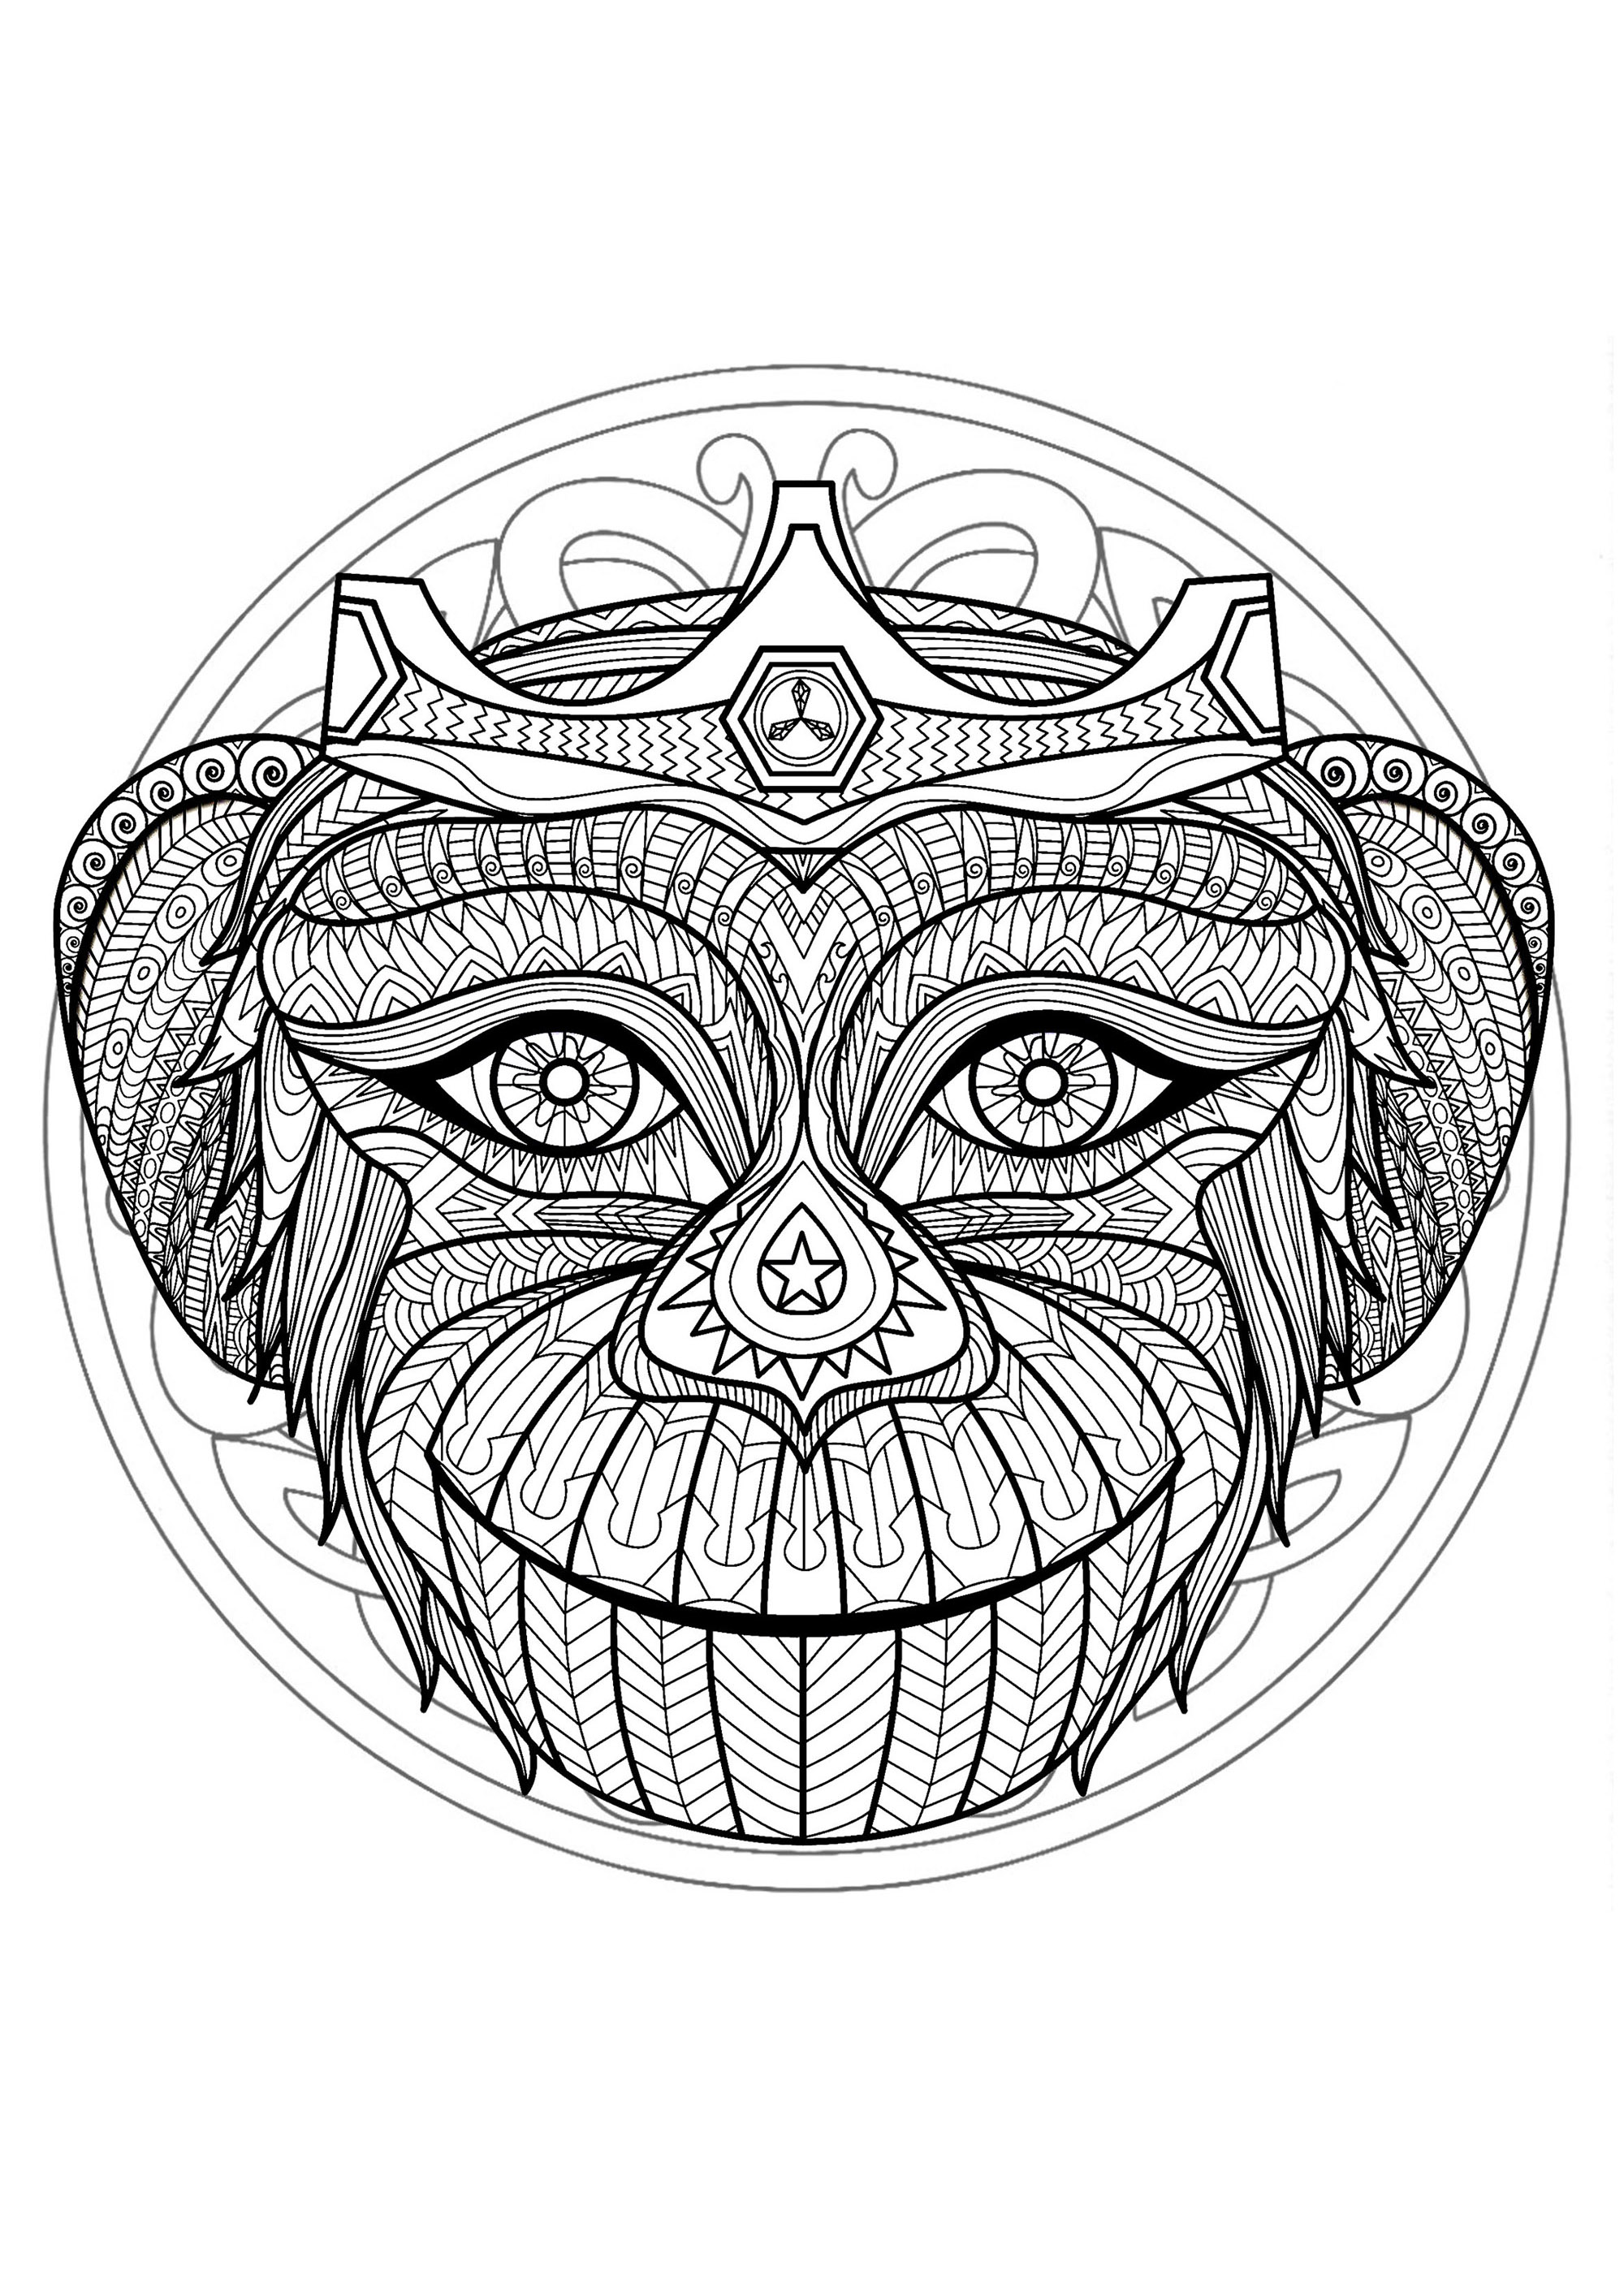 Mandala e testa di scimmia. Se siete pronti a trascorrere lunghi minuti di relax, preparatevi a colorare questo mandala piuttosto complesso... Se volete, potete usare molti colori.